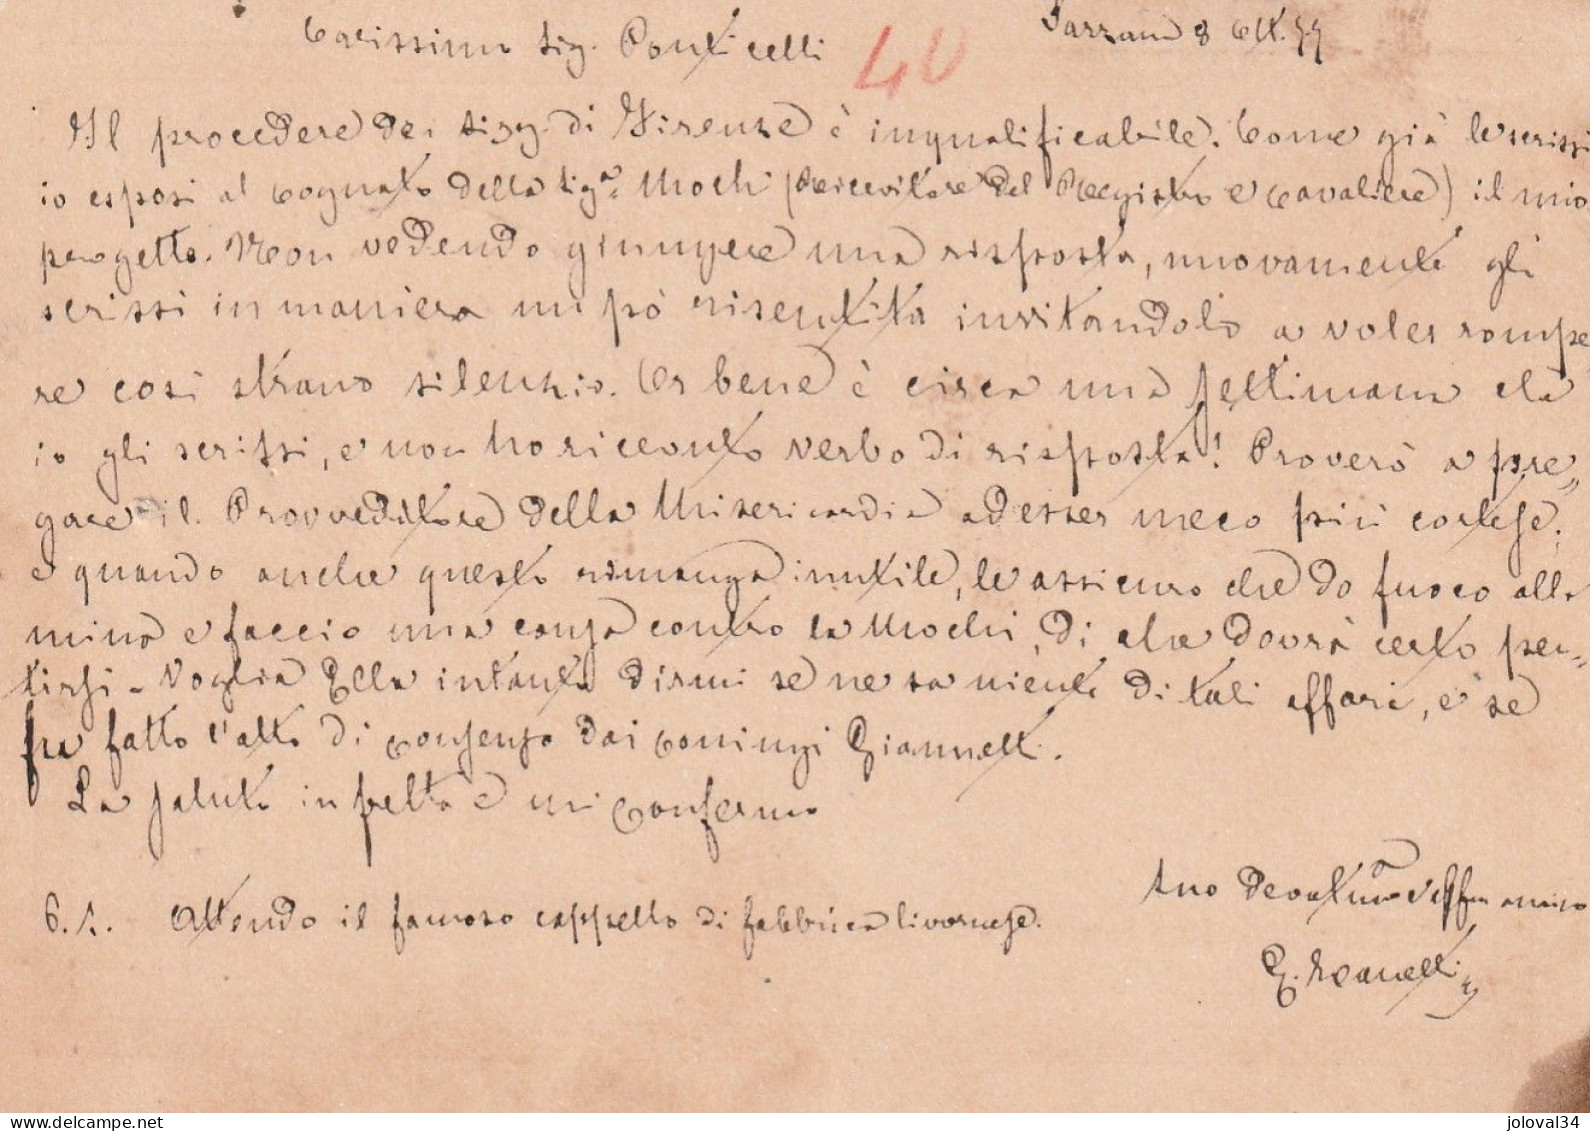 Italie Entier Postal SARZANA  8/10/1877  Pour Grosseto - Entero Postal